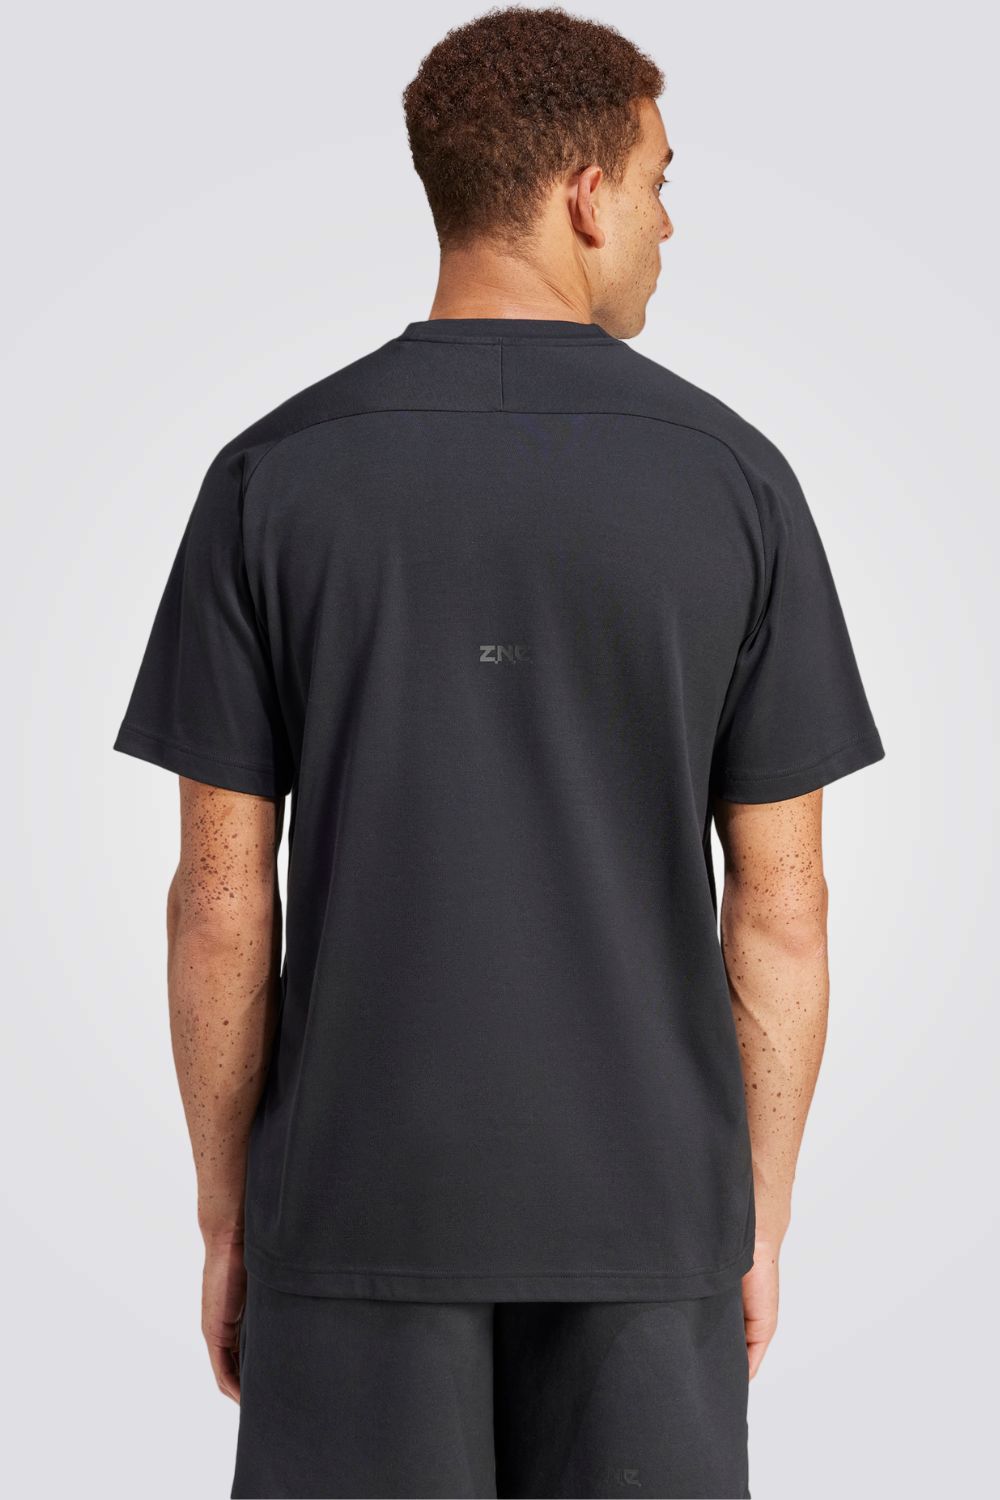 חולצה מבית המותג ADIDAS , עשויה מבד נוח ומשלבת בין אופנתיות לנוחות בלתי מתפשרת